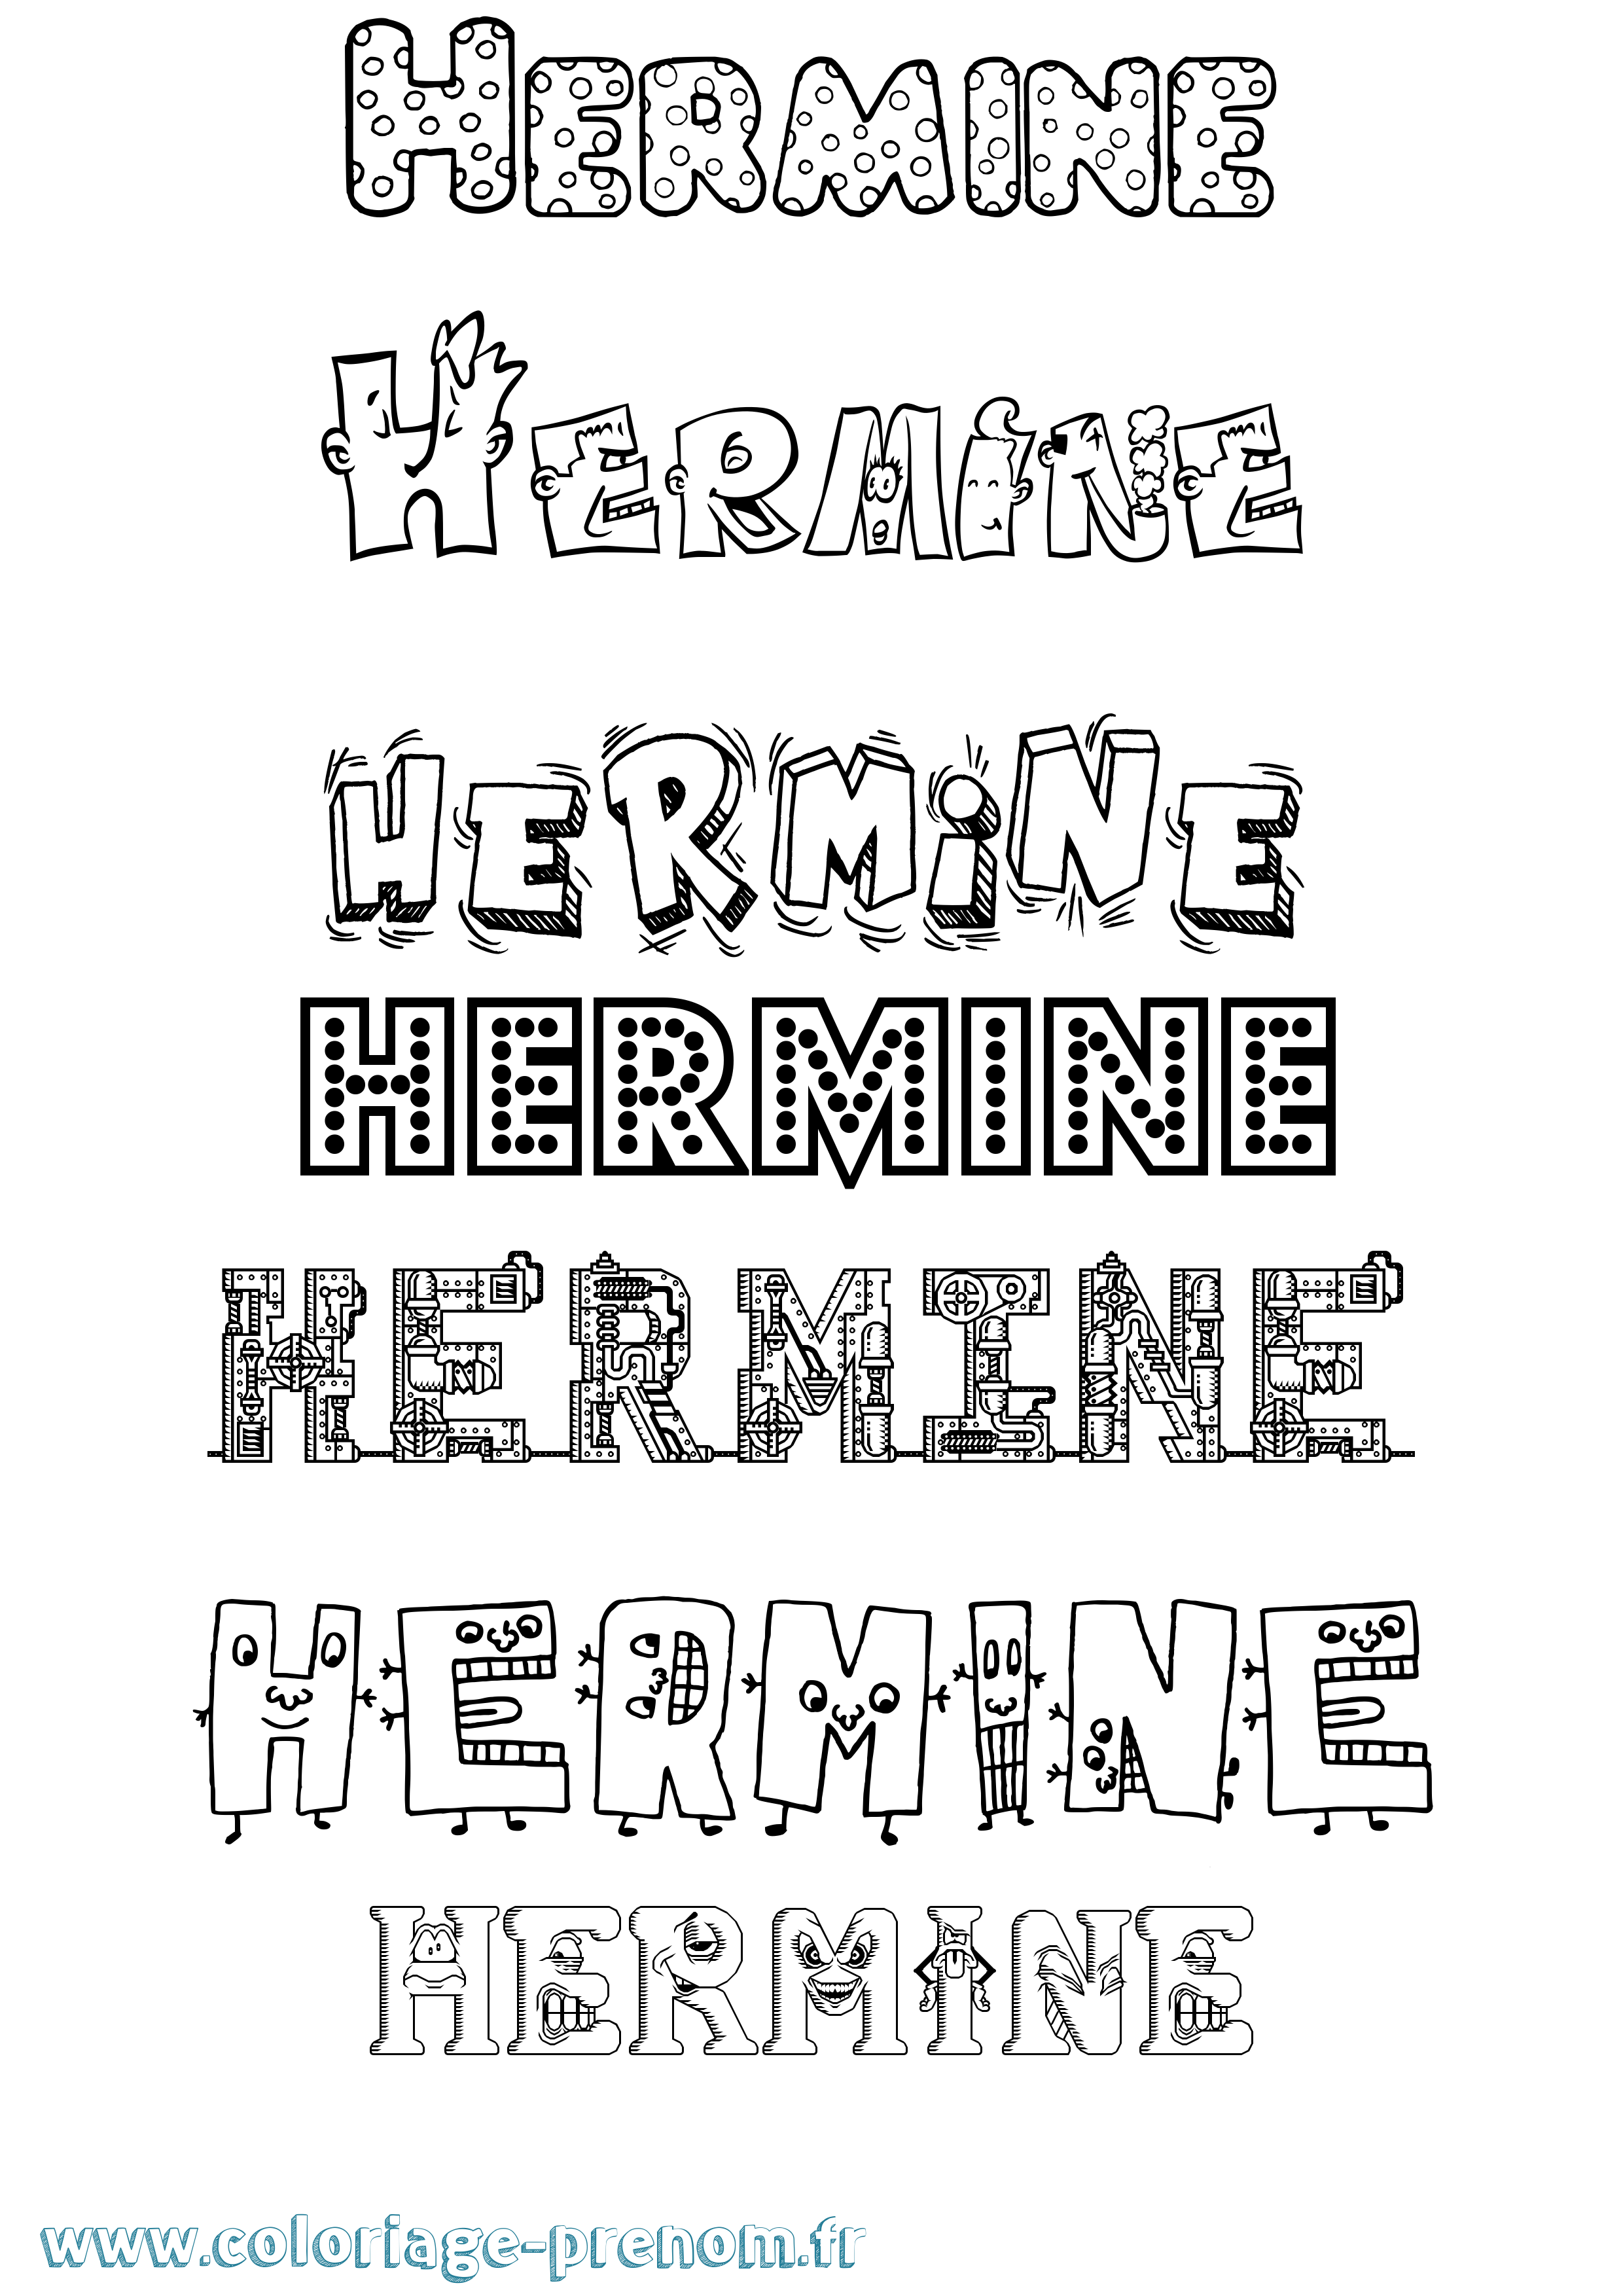 Coloriage prénom Hermine Fun